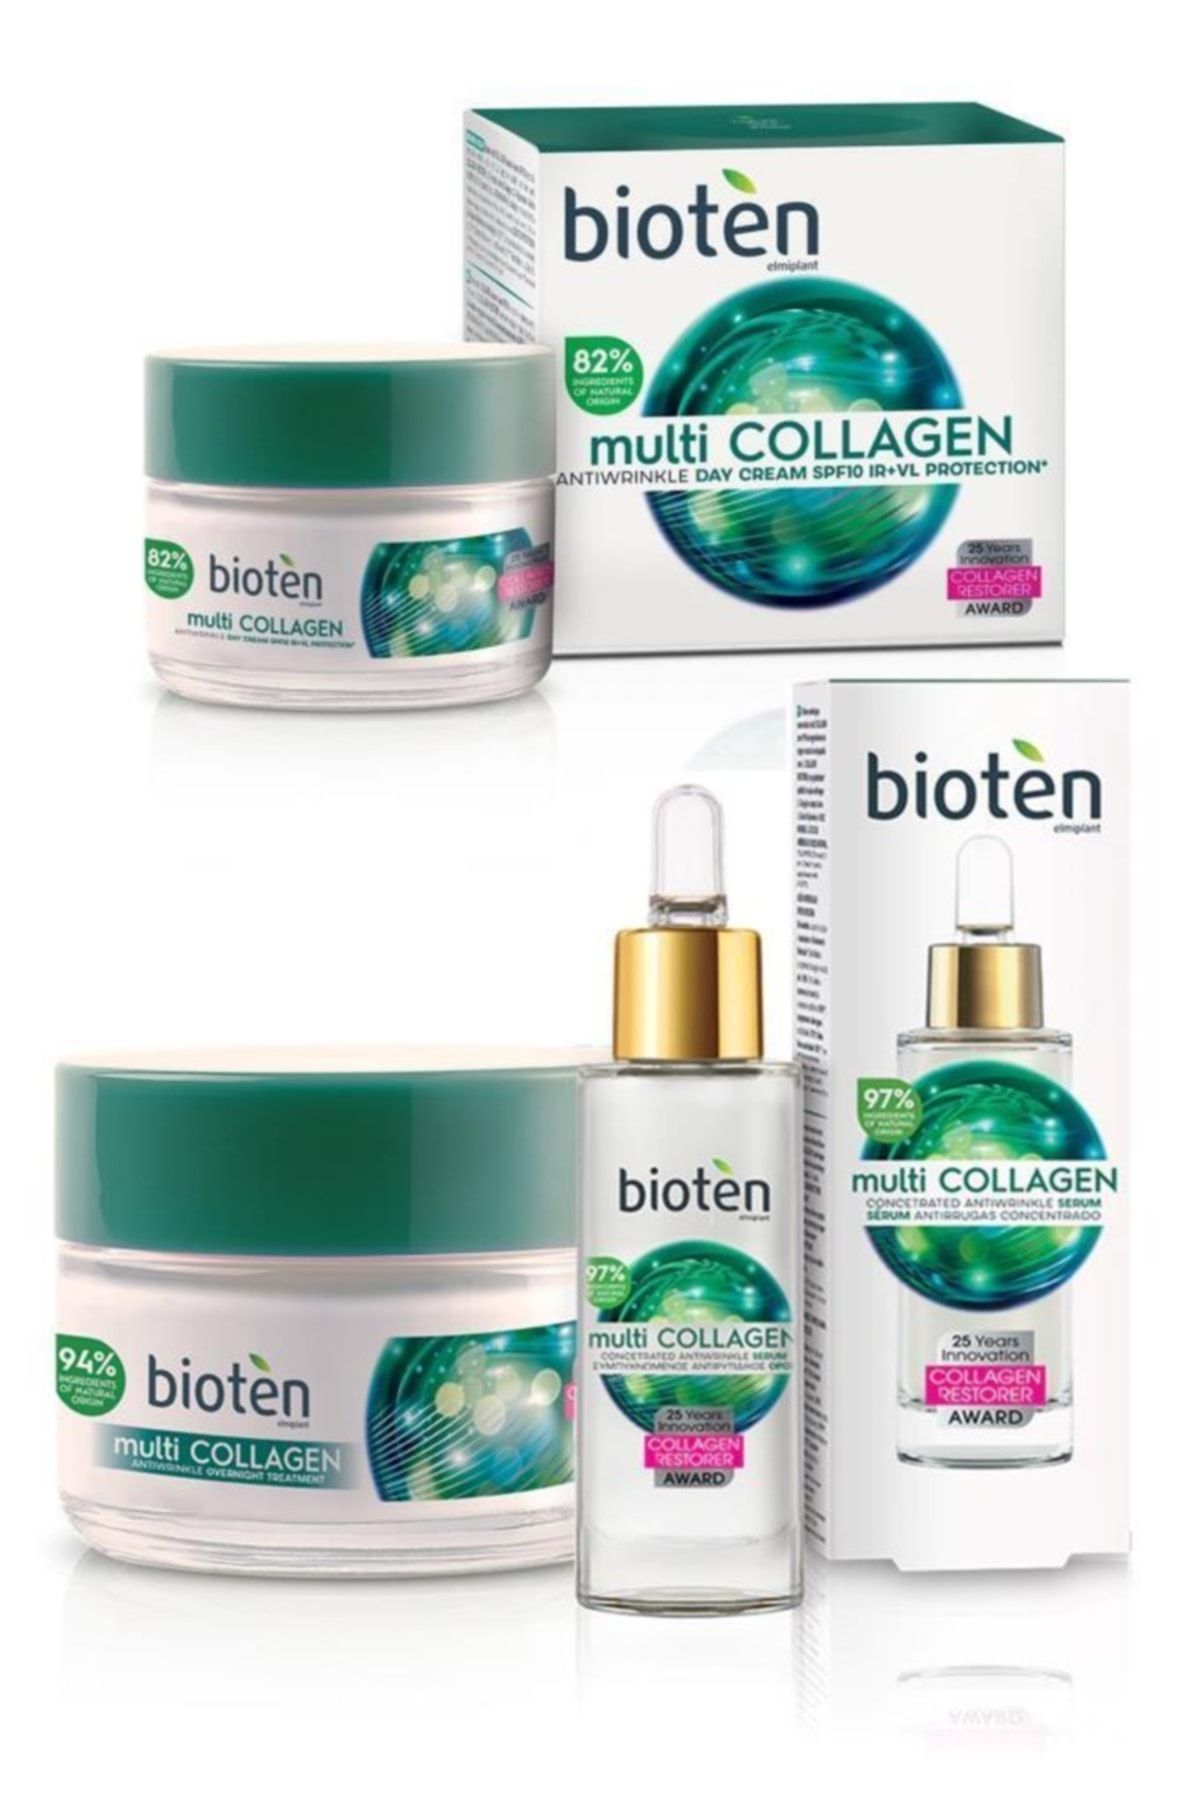 Bioten Multi Collagen Yaşlanma Karşıtı Cilt Bakım Seti